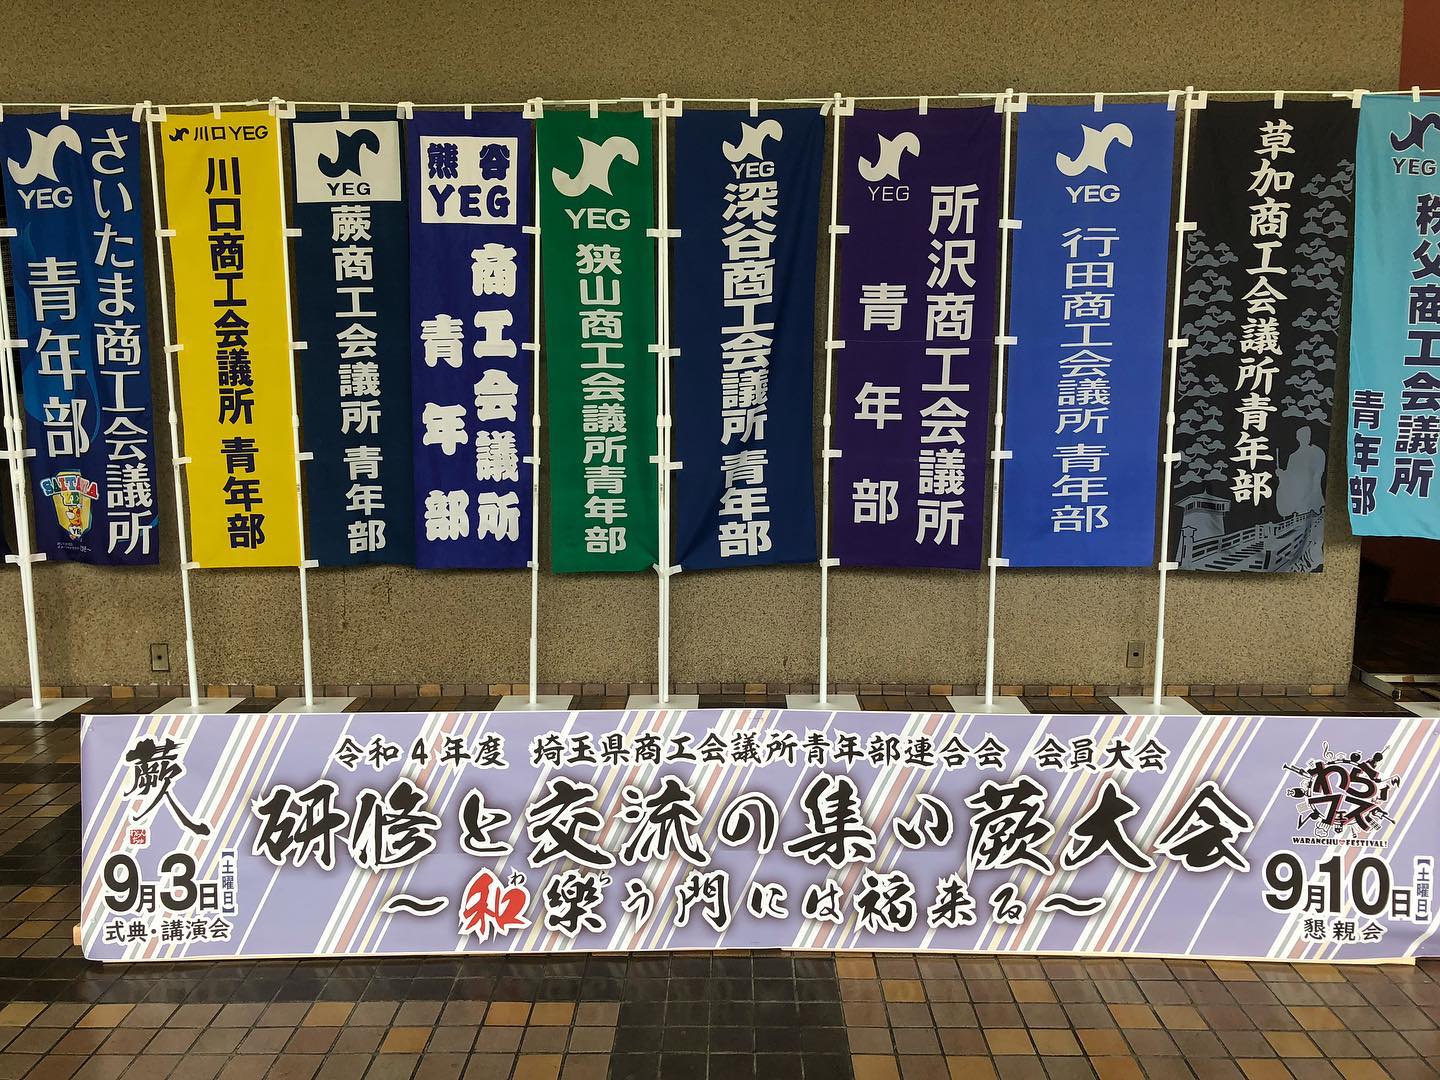 KKT蕨大会🤩
始まります

来年は熊谷です